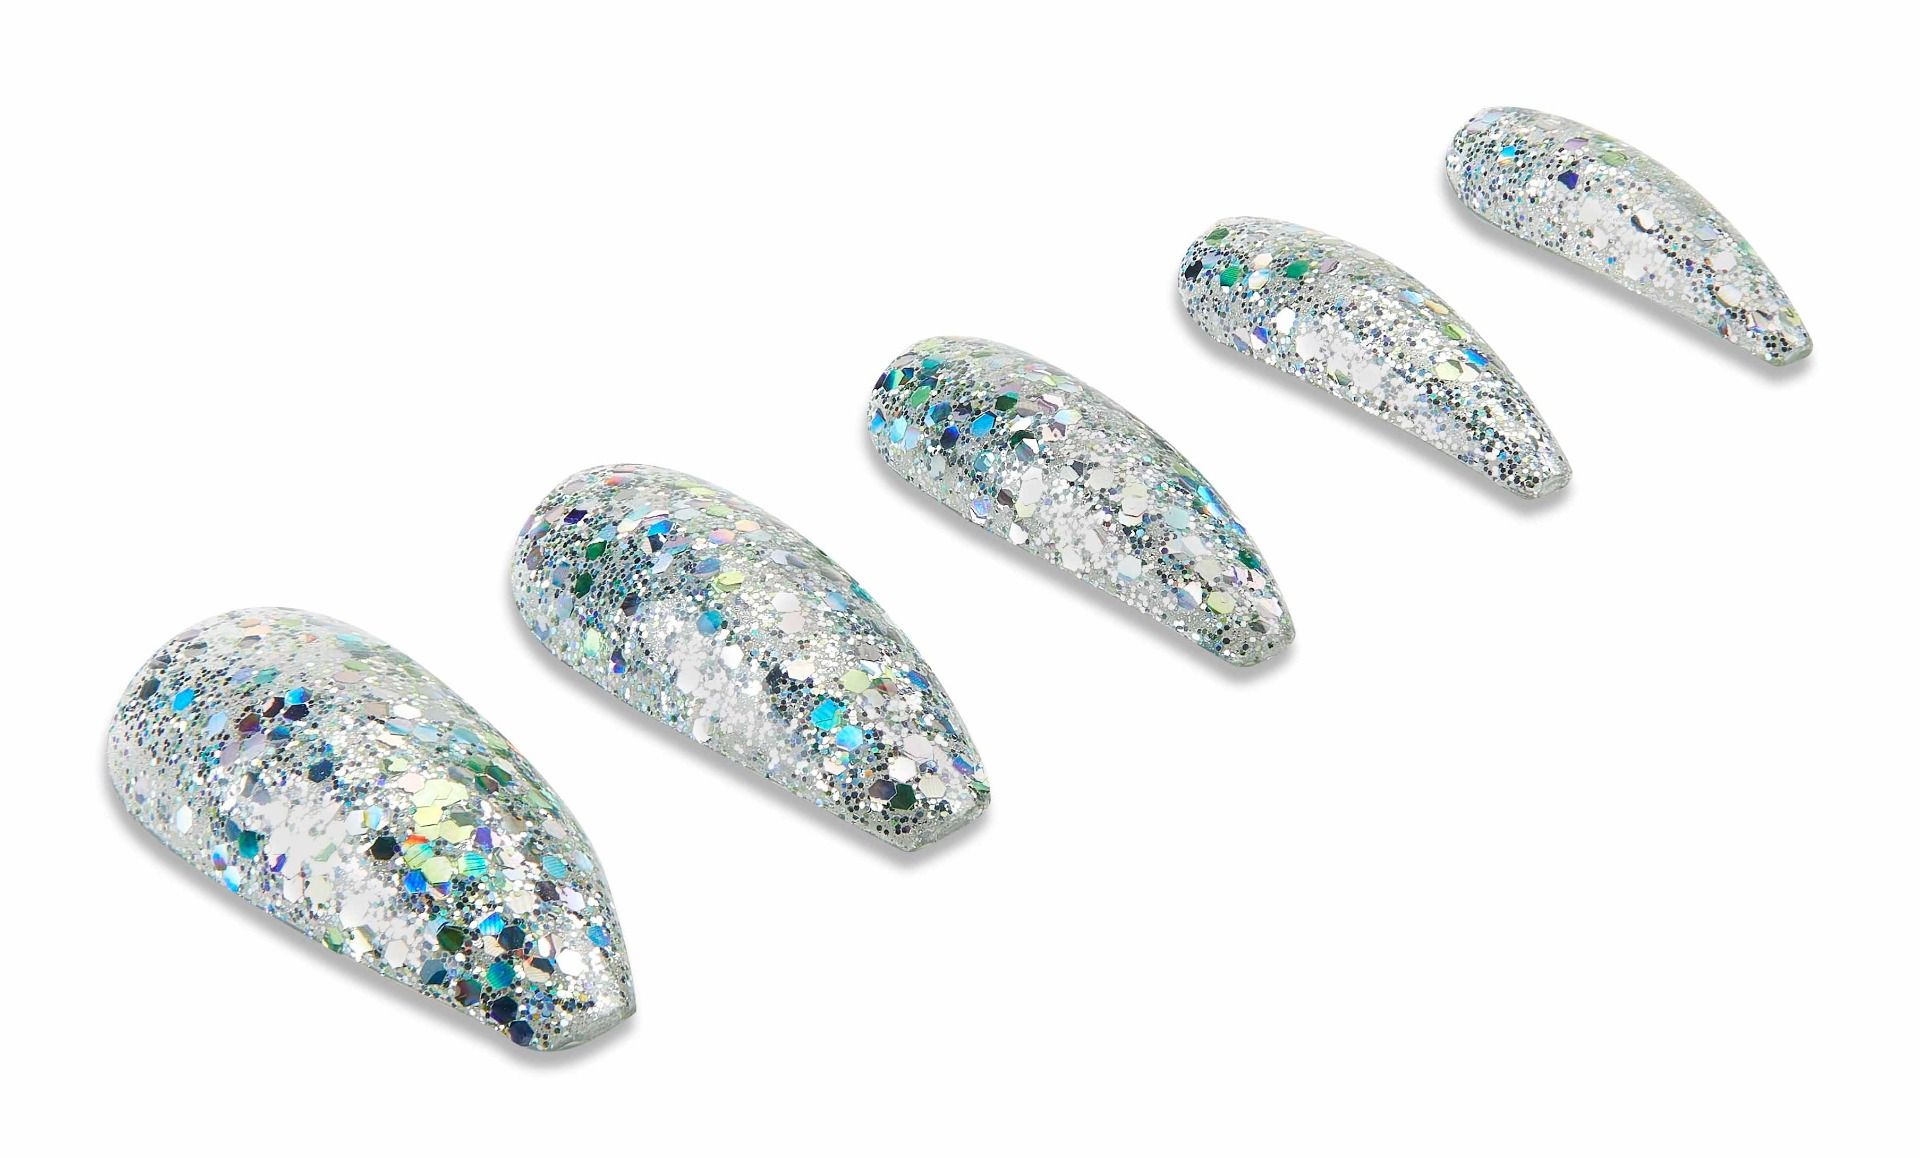 Amazon.com : Kiara Sky Diamond FX Acrylic - Reflective Glitter Acrylic  Powder For Nails - Ice Cold : Beauty & Personal Care